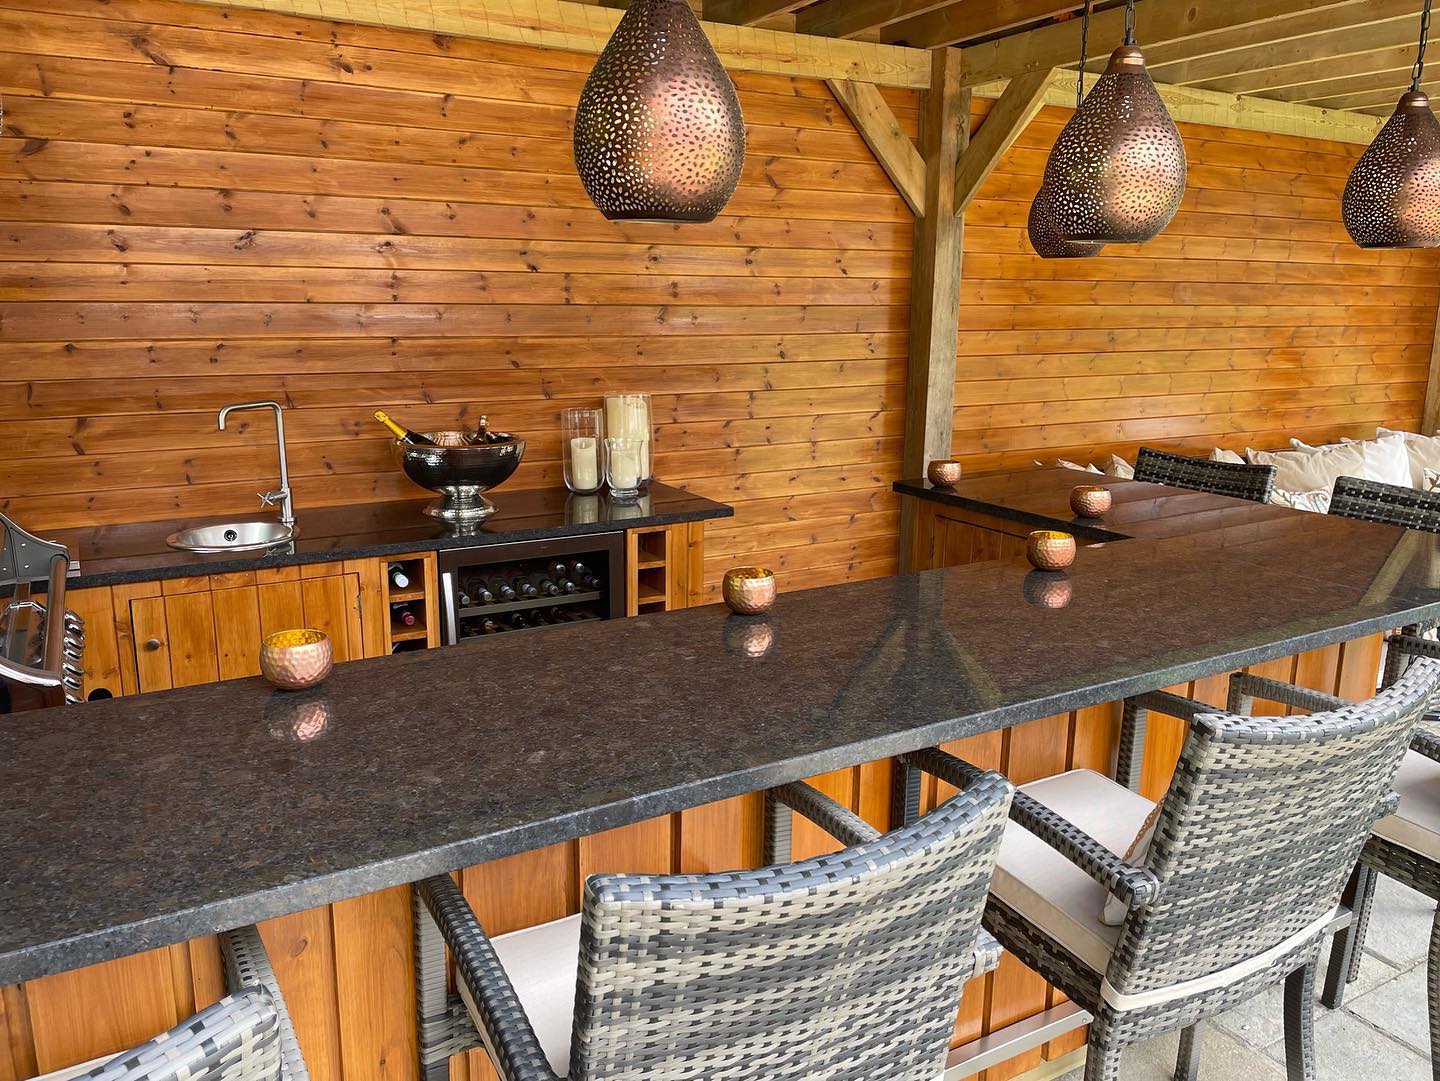 Kitchen worktops from £580 Quartz, marble, natural granite & quartzite countertops